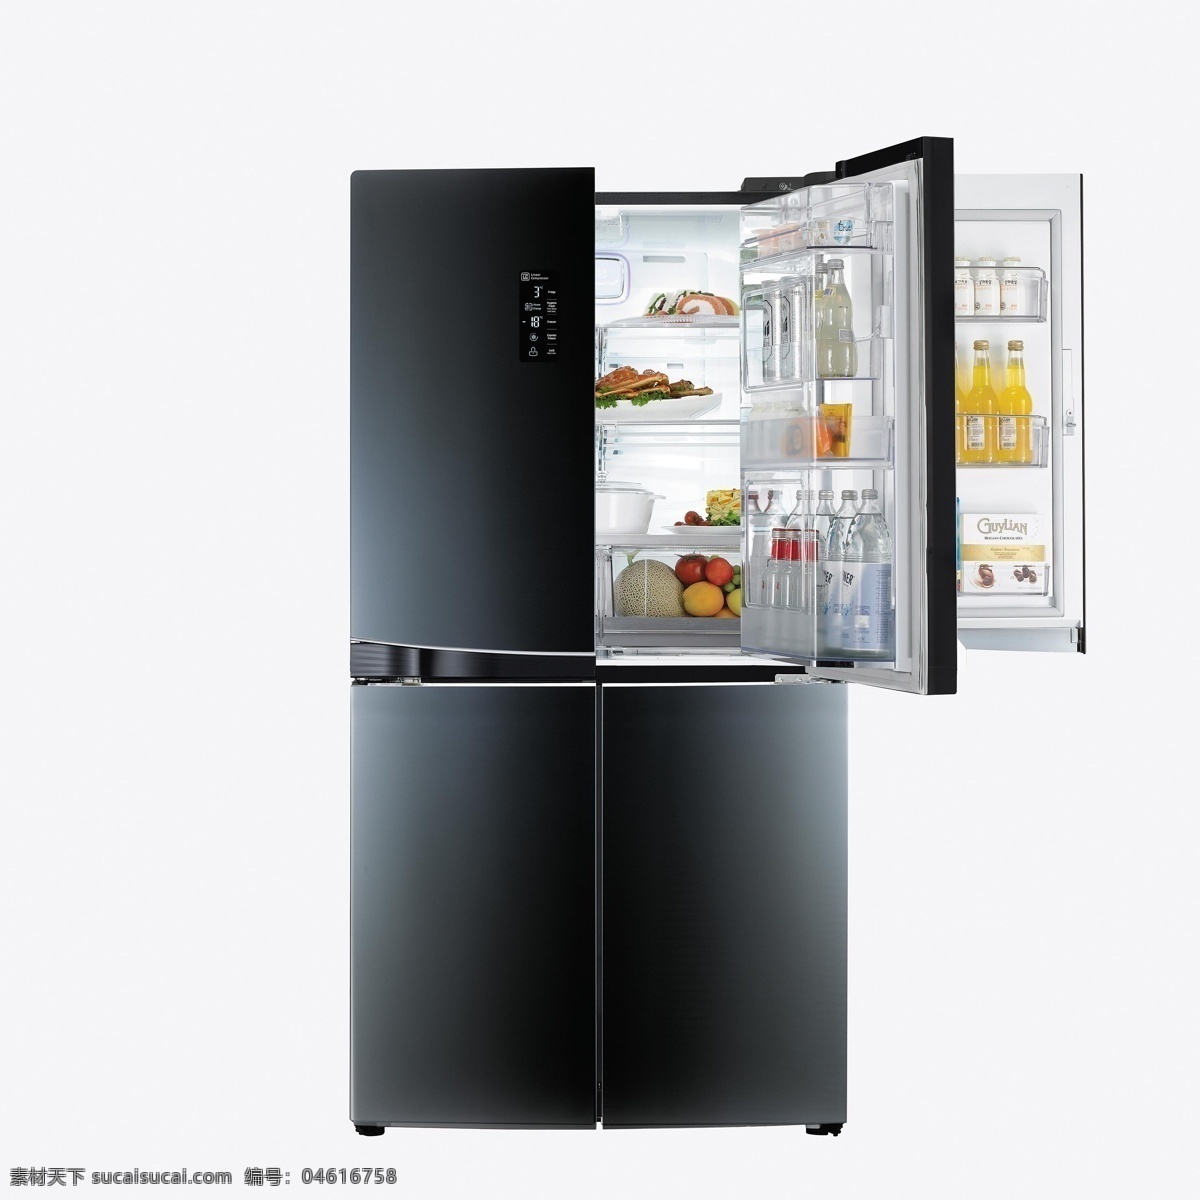 lg冰箱图片 lg冰箱 lg品牌 lg家电 智能冰箱 四门冰箱 大型冰箱 打开的冰箱 冰箱 生活百科 数码家电